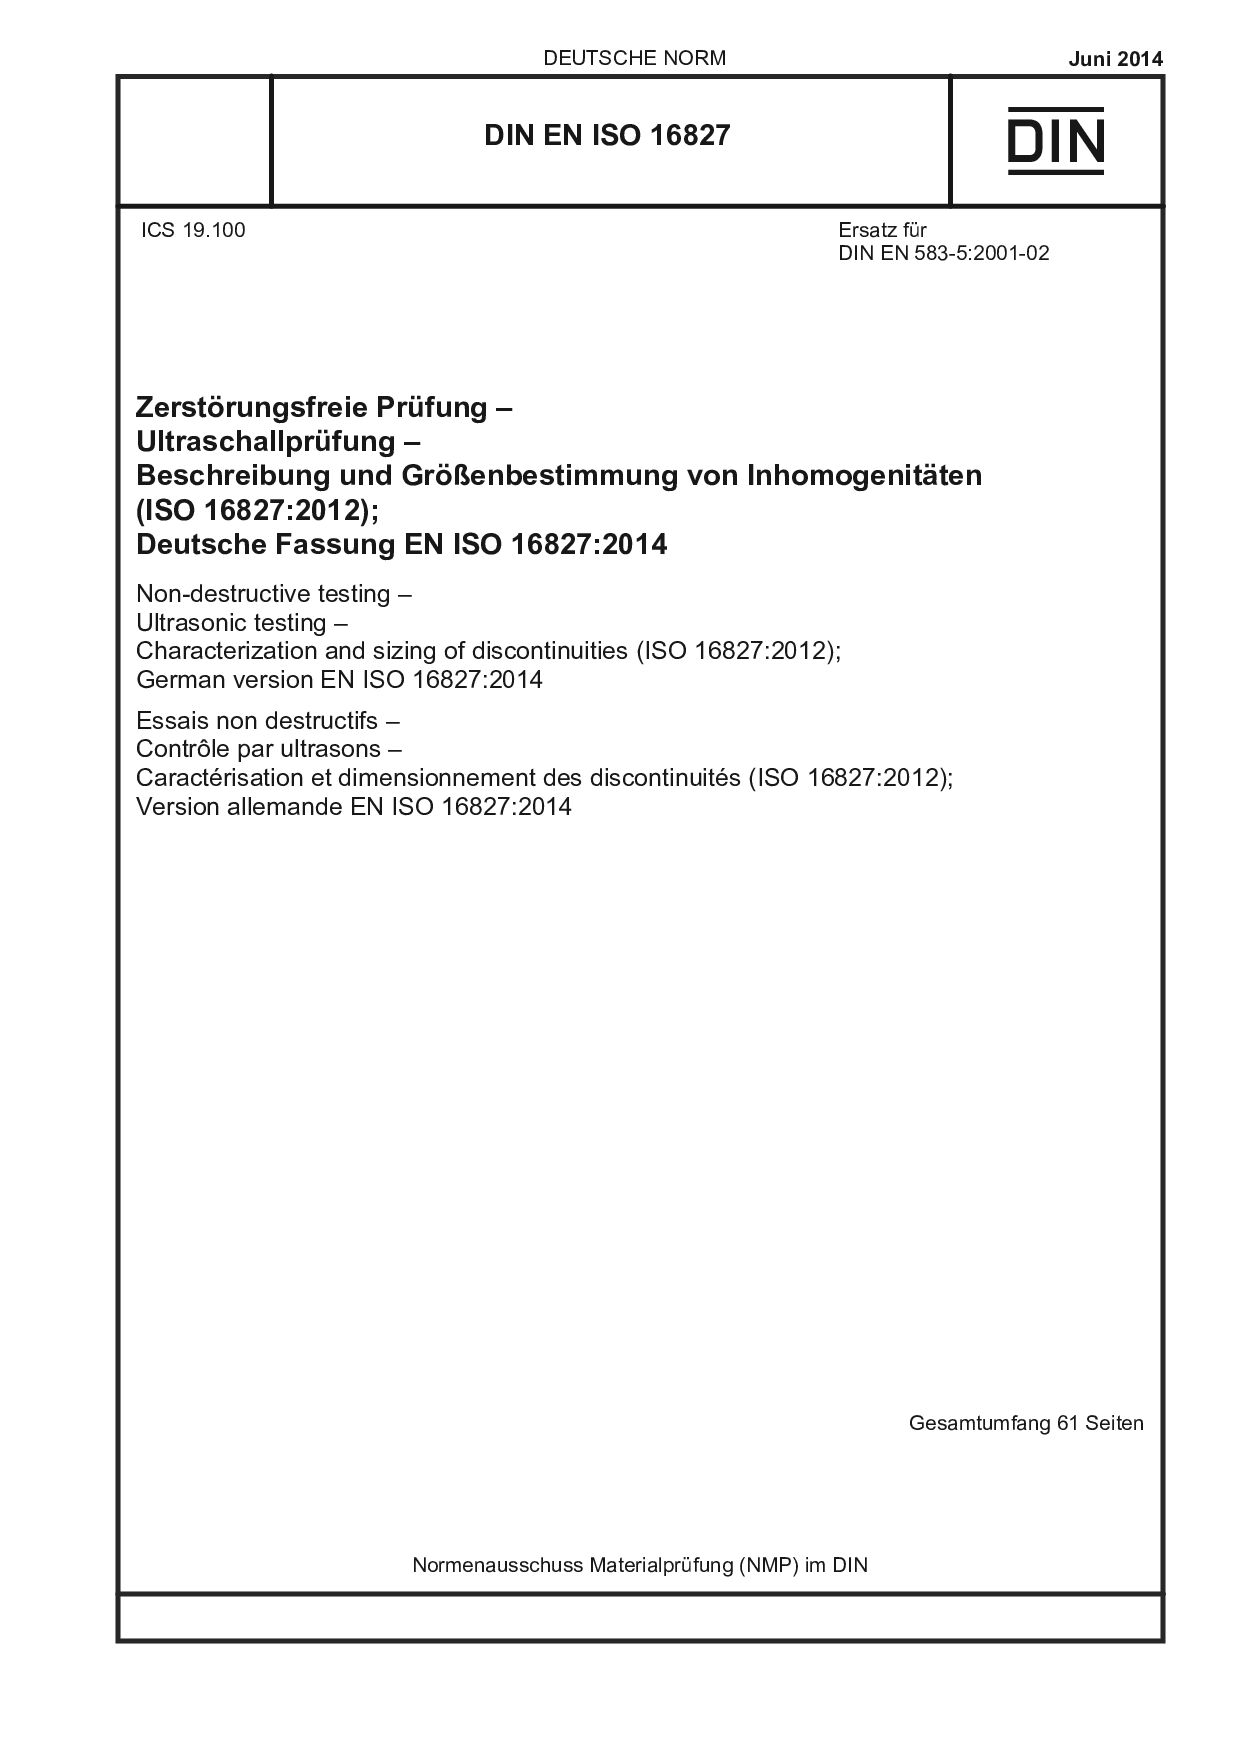 DIN EN ISO 16827:2014-06